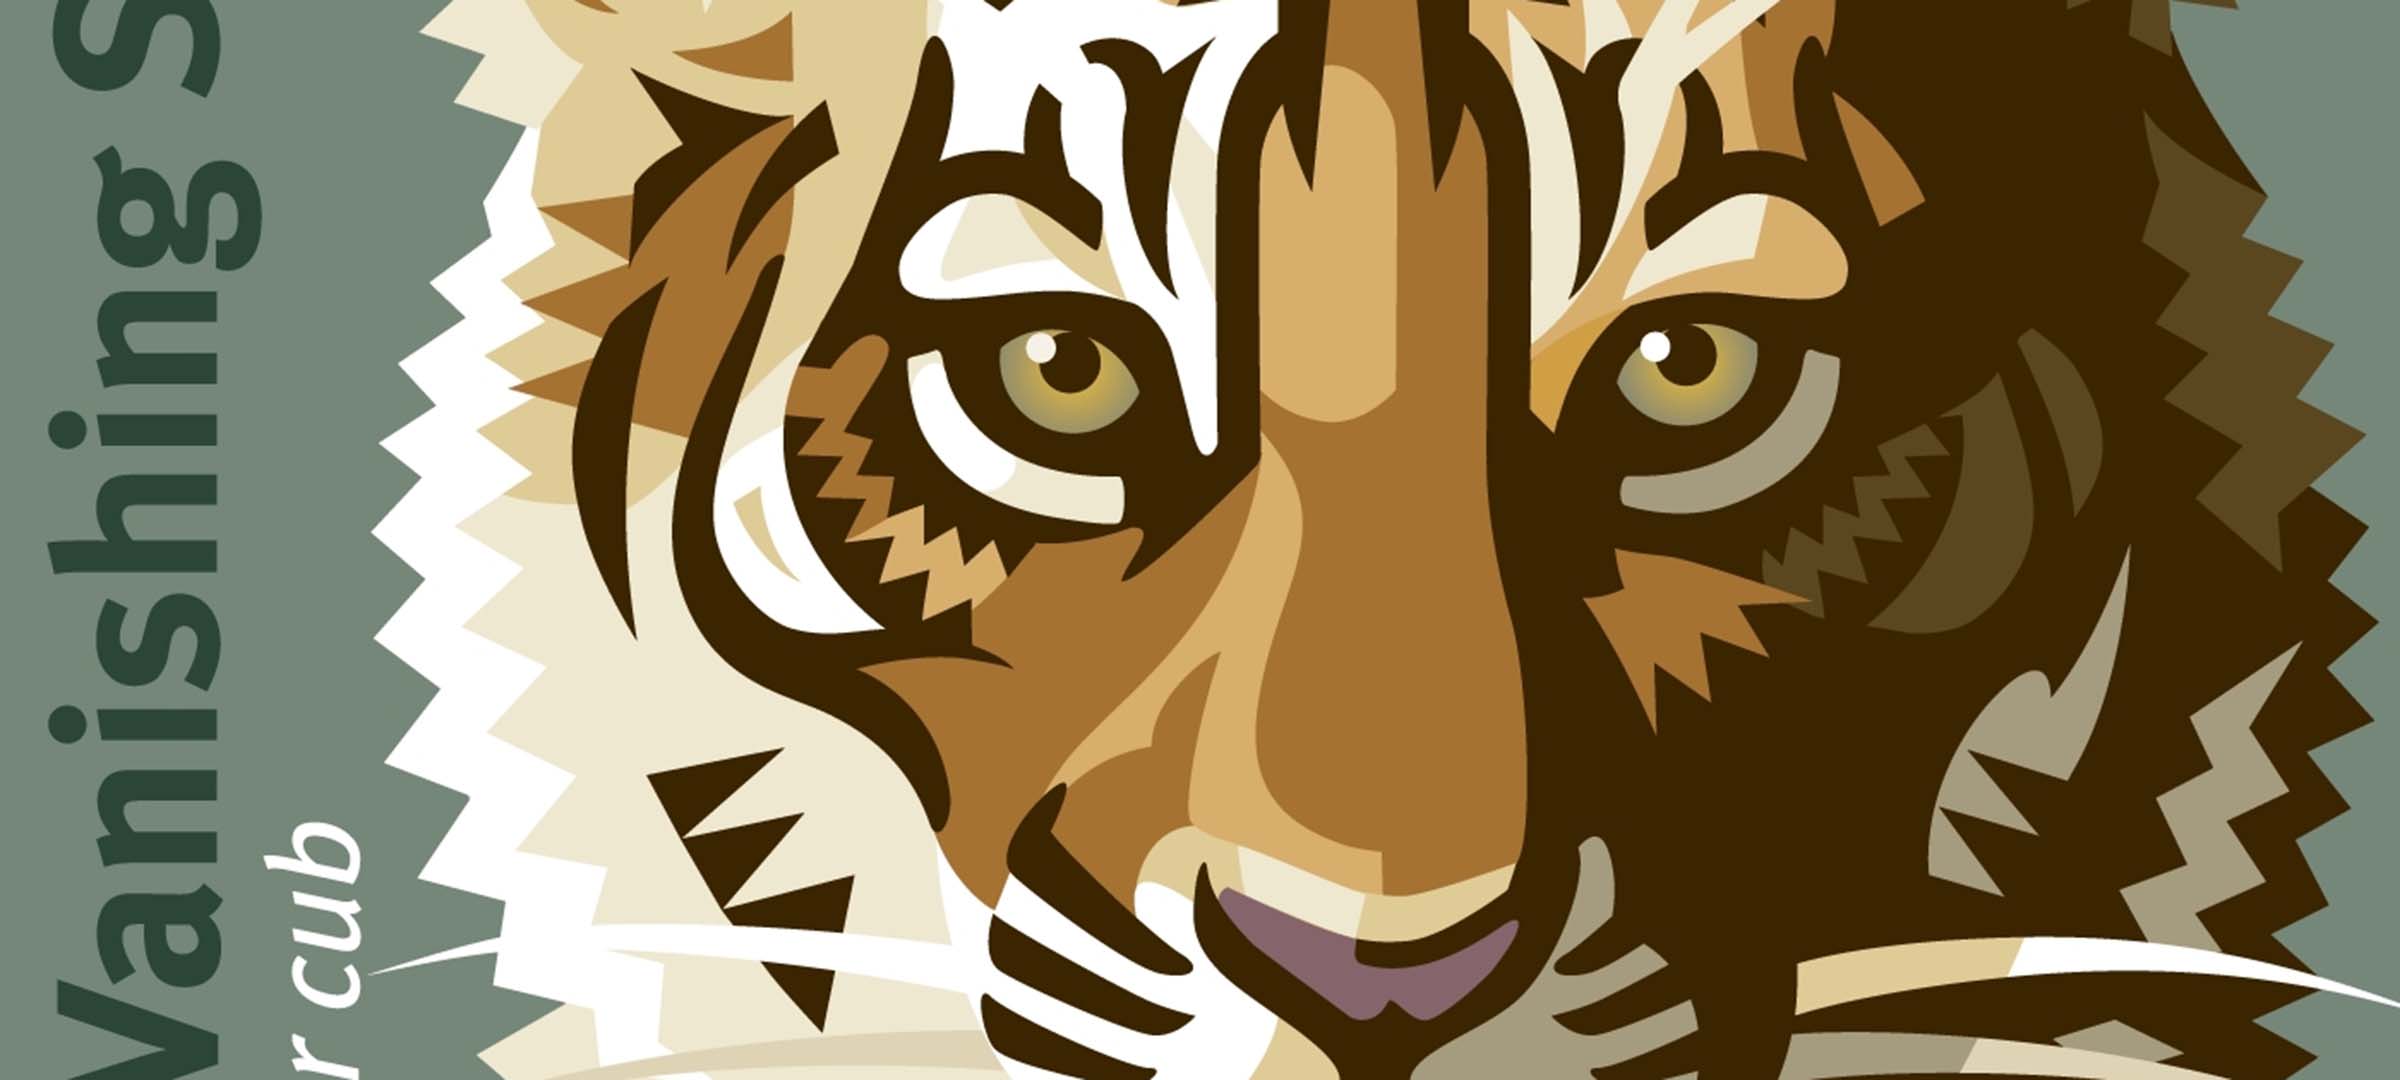 Tiger stamp detail